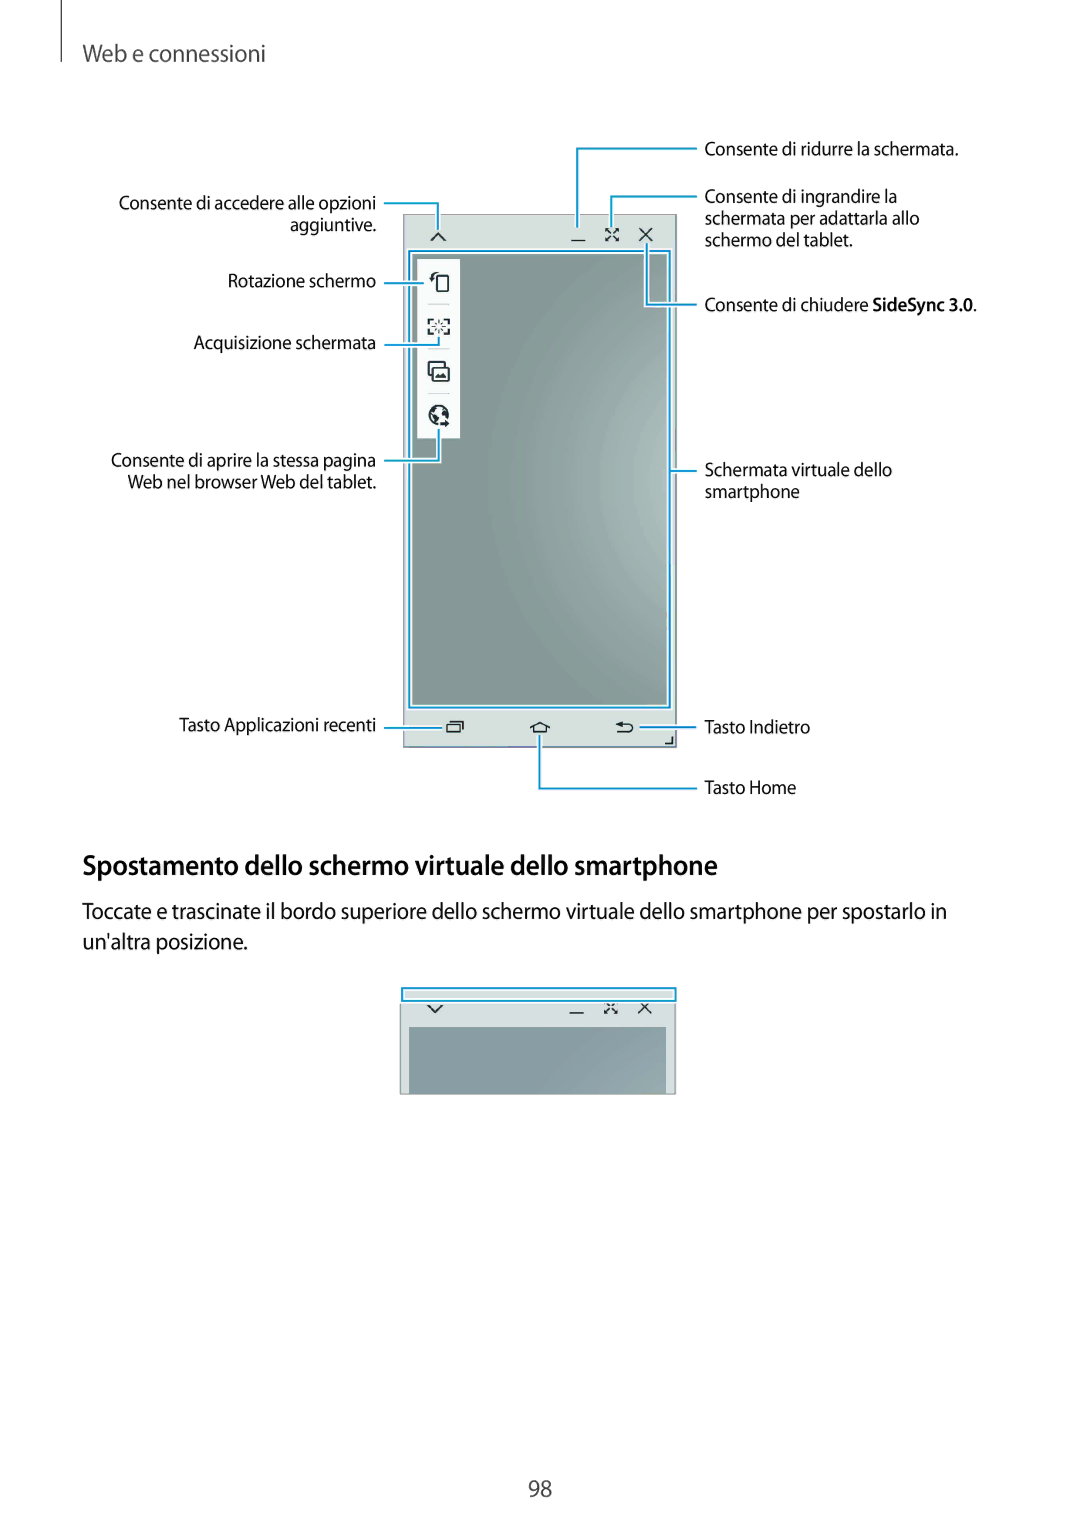 Samsung SM-P9050ZKAITV, SM-P9050ZKAXEO, SM-P9050ZWYITV, SM-P9050ZKYITV Spostamento dello schermo virtuale dello smartphone 